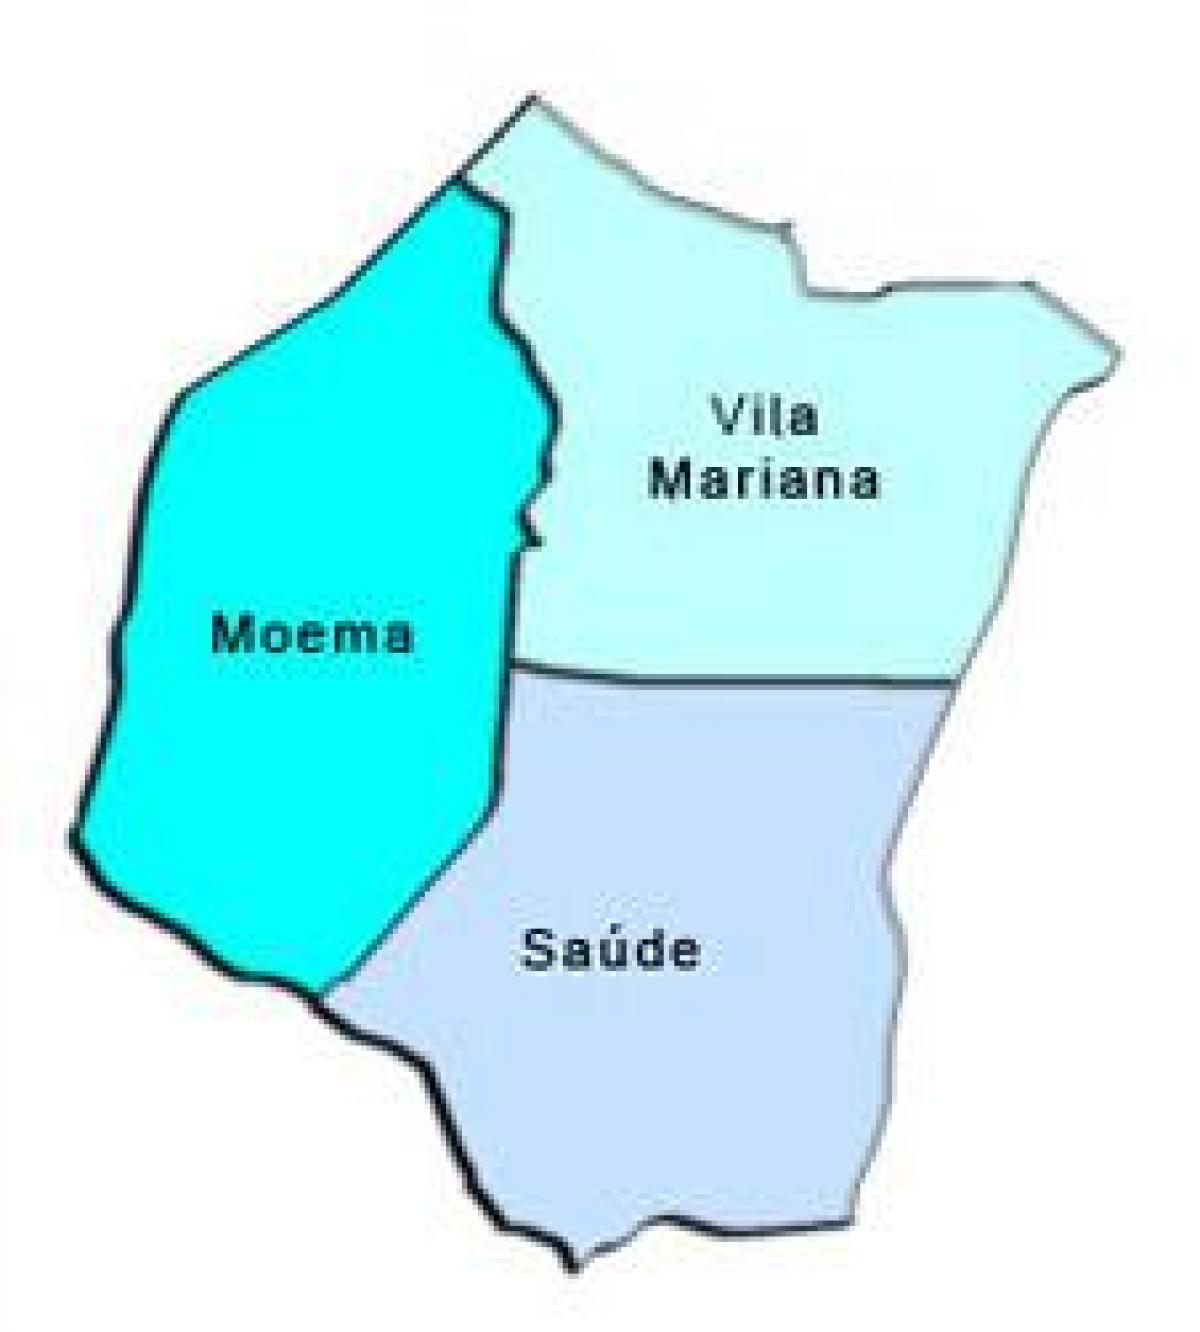 Peta dari Vila Mariana sub-prefektur